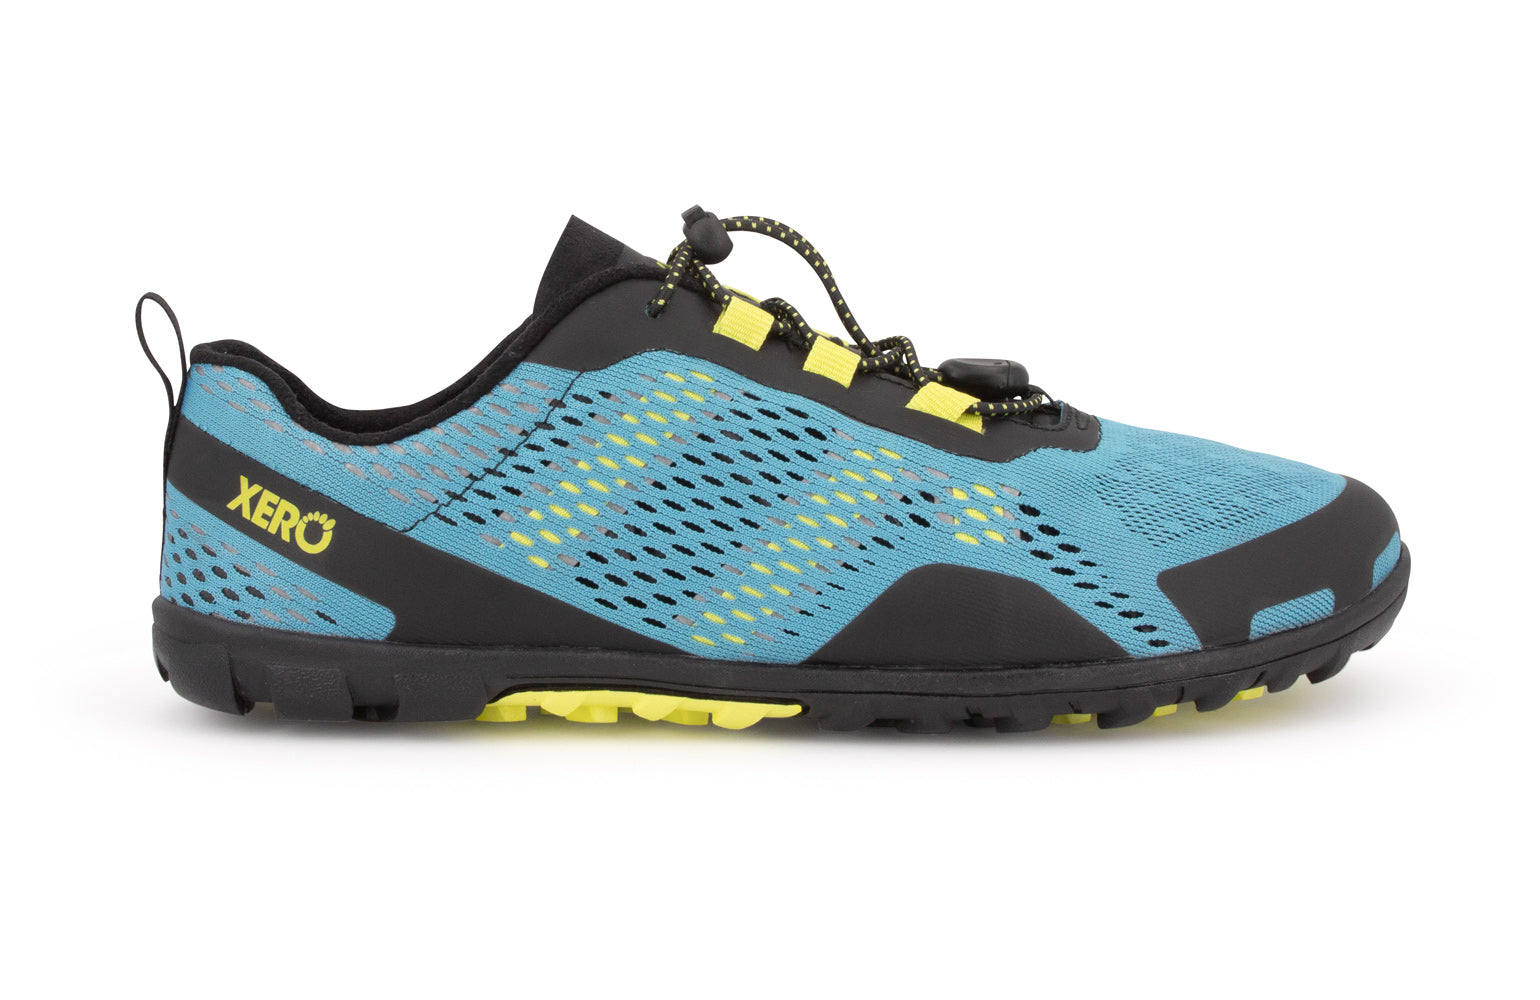 Xero Shoes Aqua X Sport barfods vand træningssko til mænd i farven surf, yderside